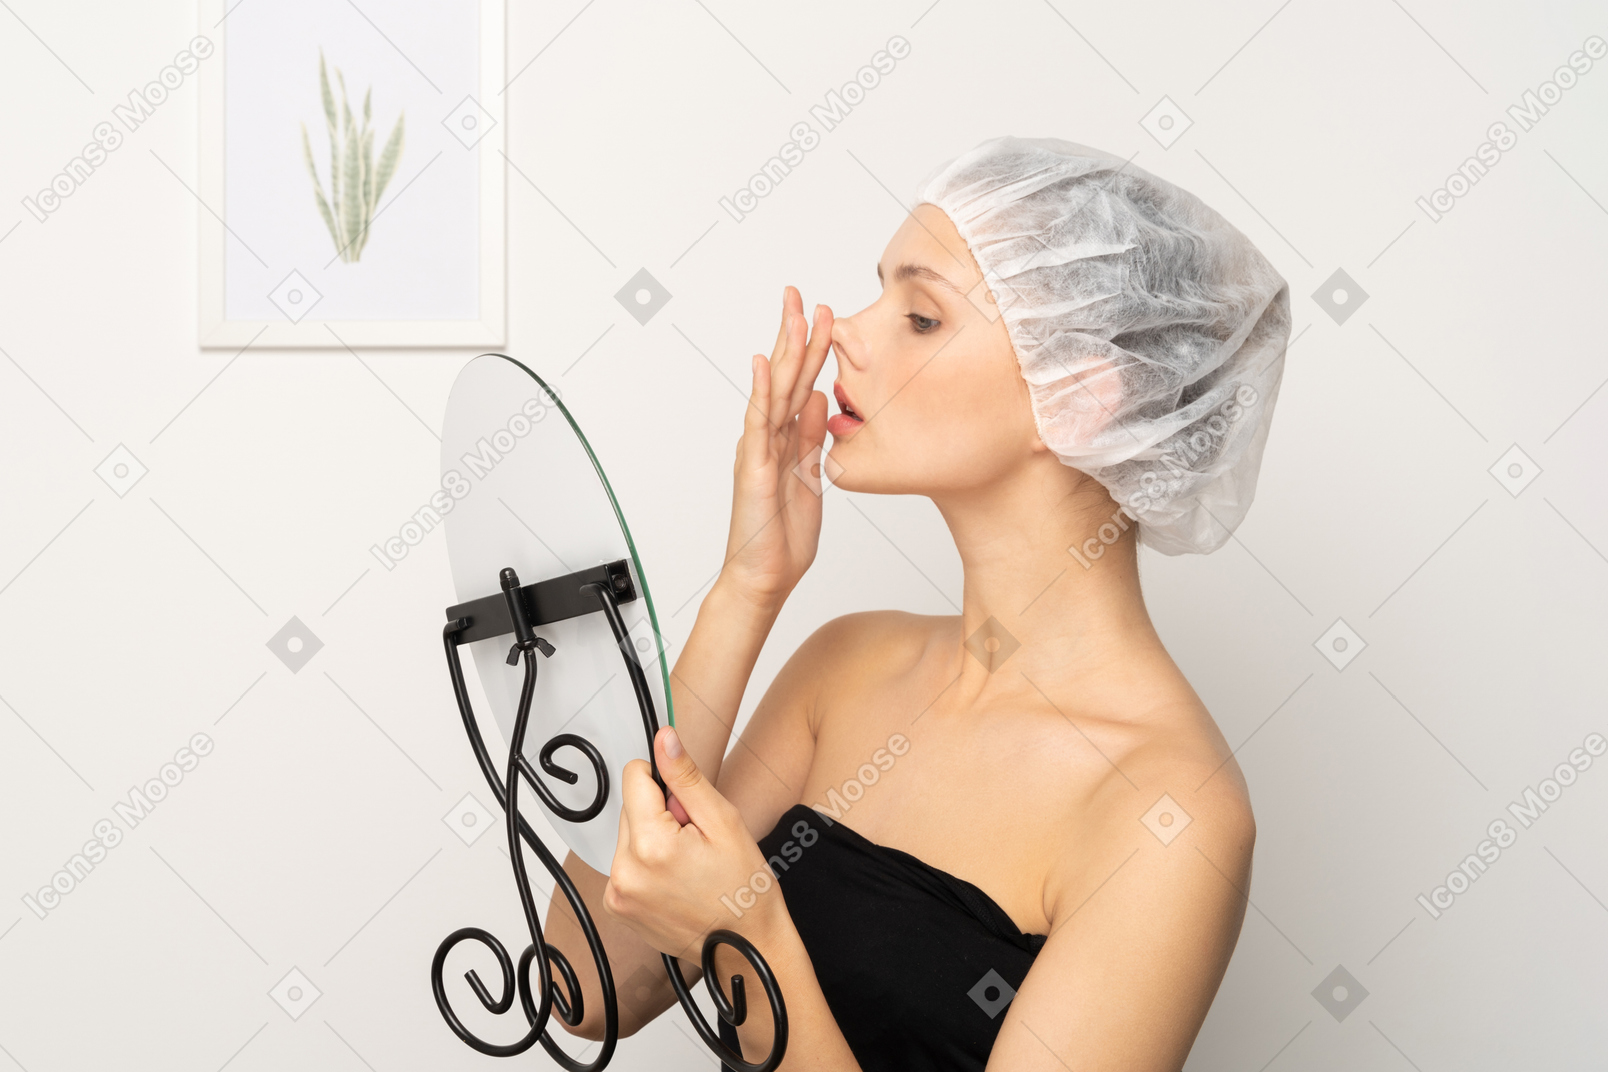 戴医用帽的年轻女子在照镜子时抬起鼻子